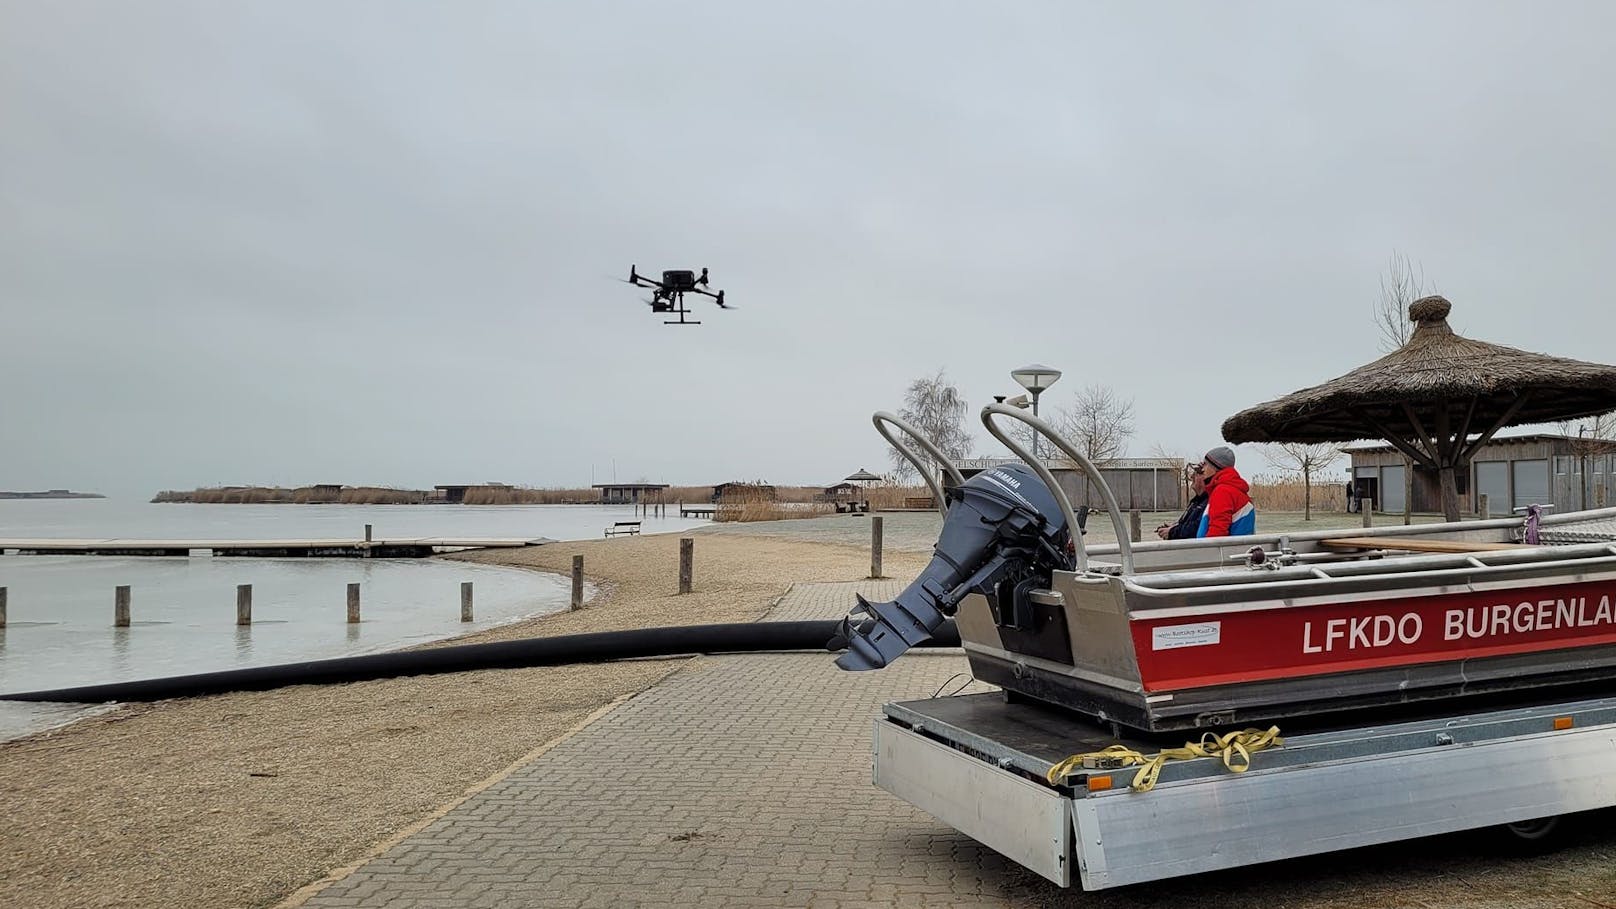 Dünnes Eis am See: Nun Drohnen-Suche nach Vermisstem